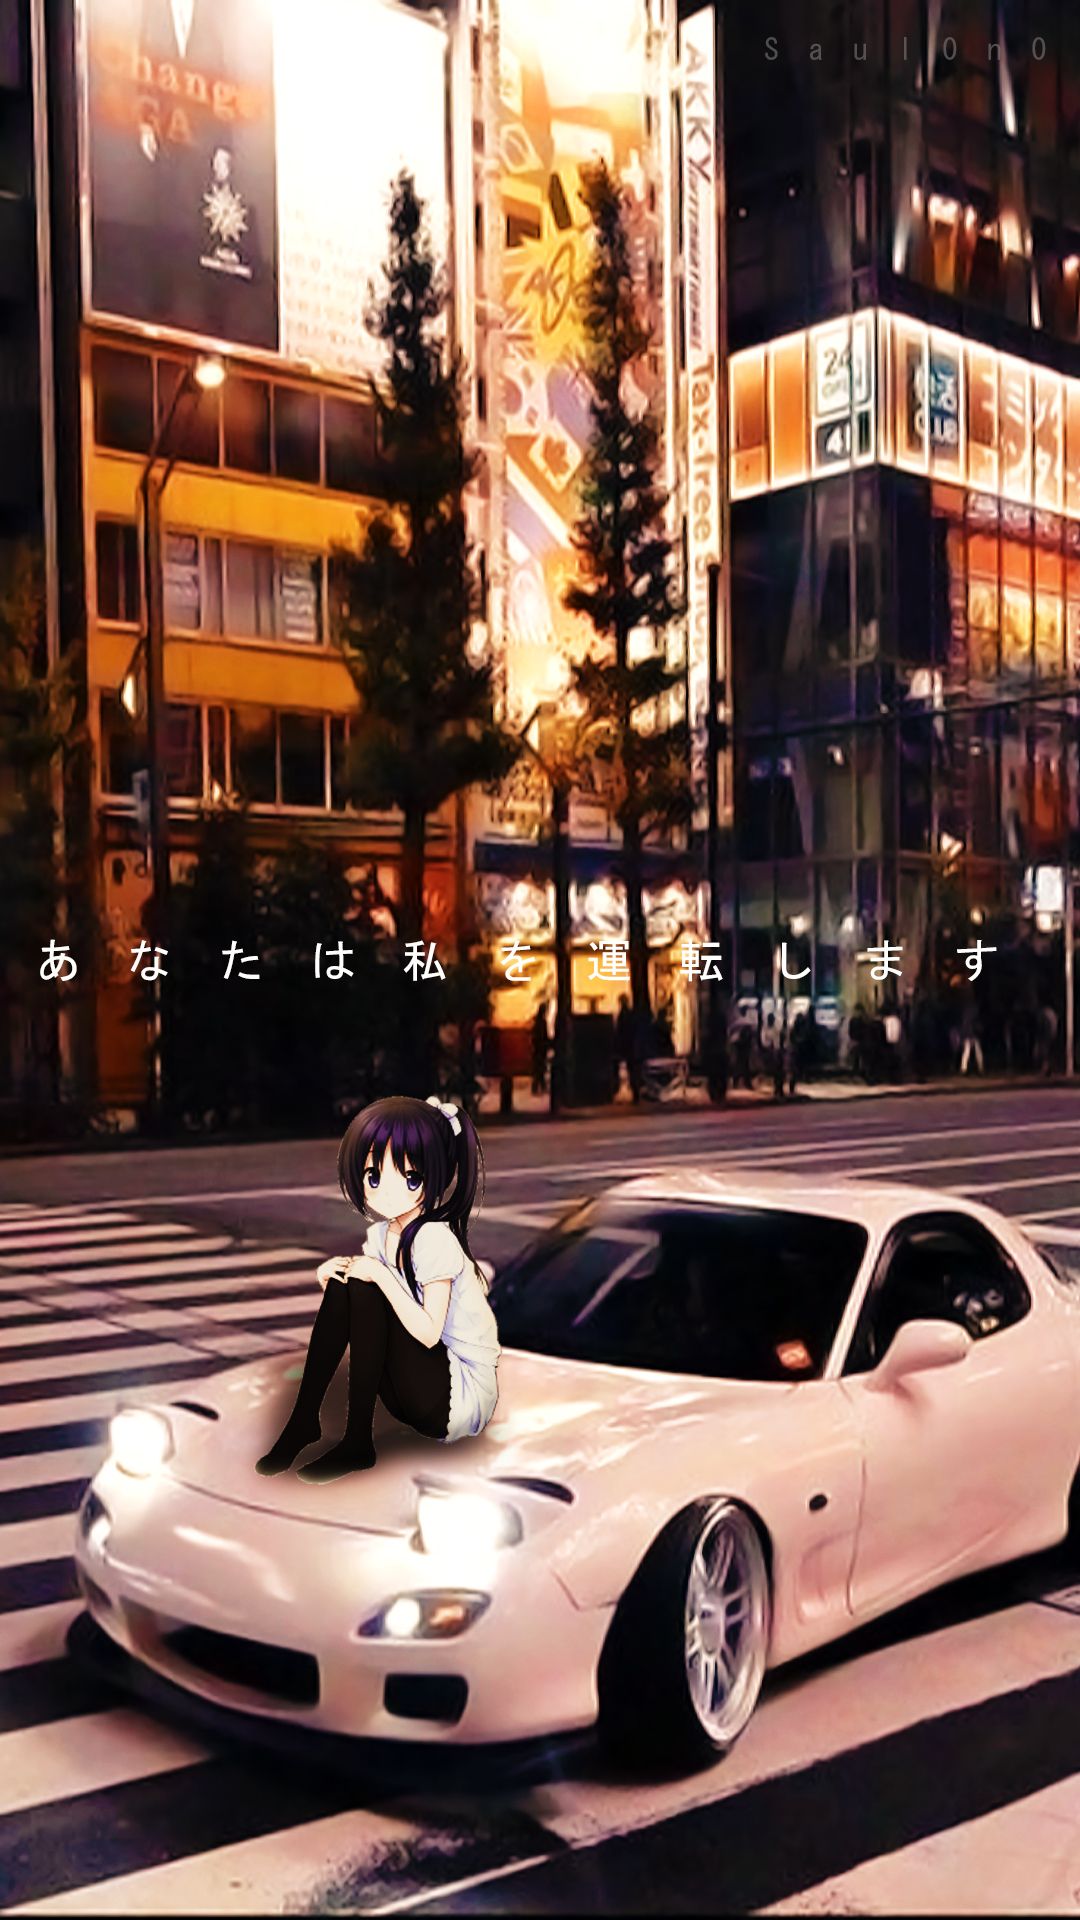 Anime drift wallpaper ilustraãão de carro mustangue coisas de carro